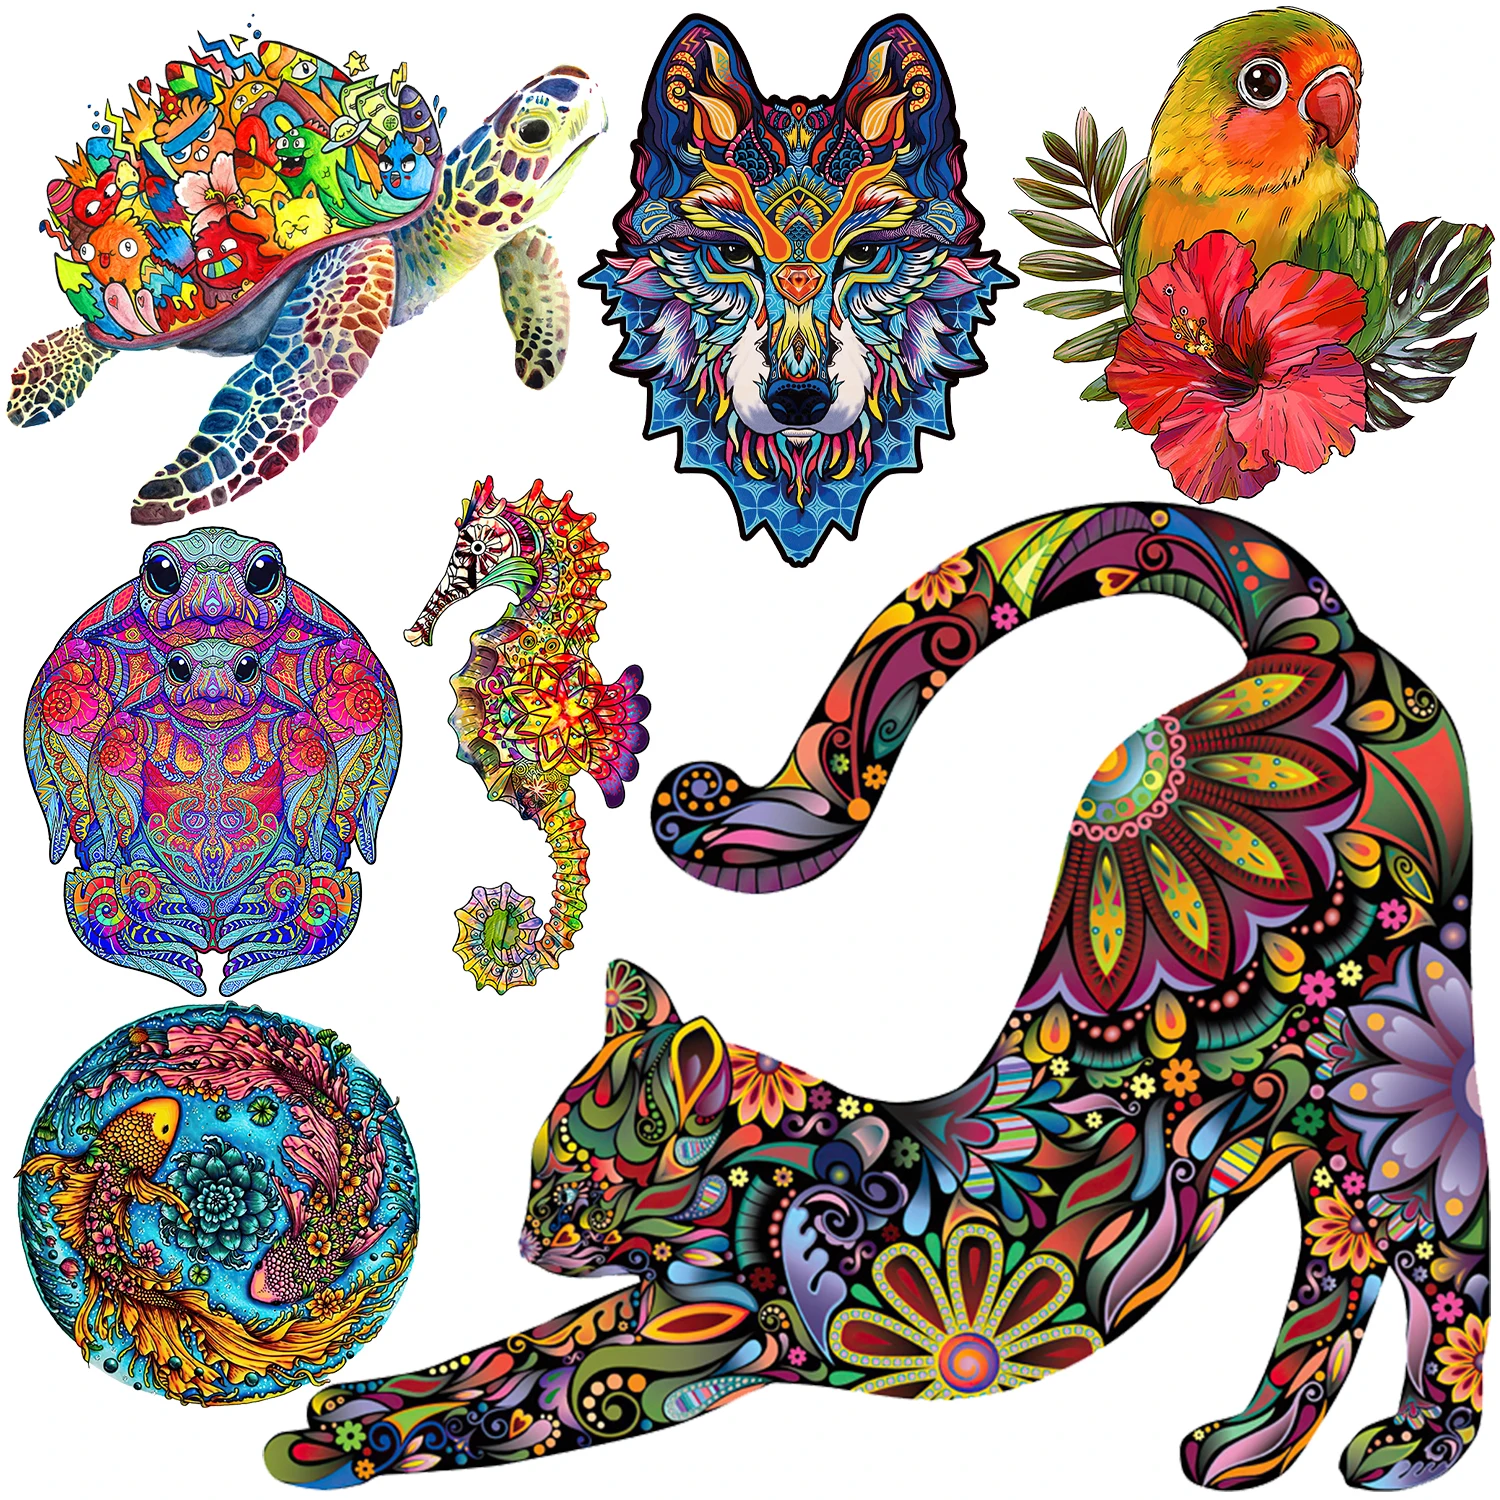 Jogos de puzzles brilhantemente coloridos Kitty para adultos e crianças,  misteriosos quebra-cabeças de madeira animal